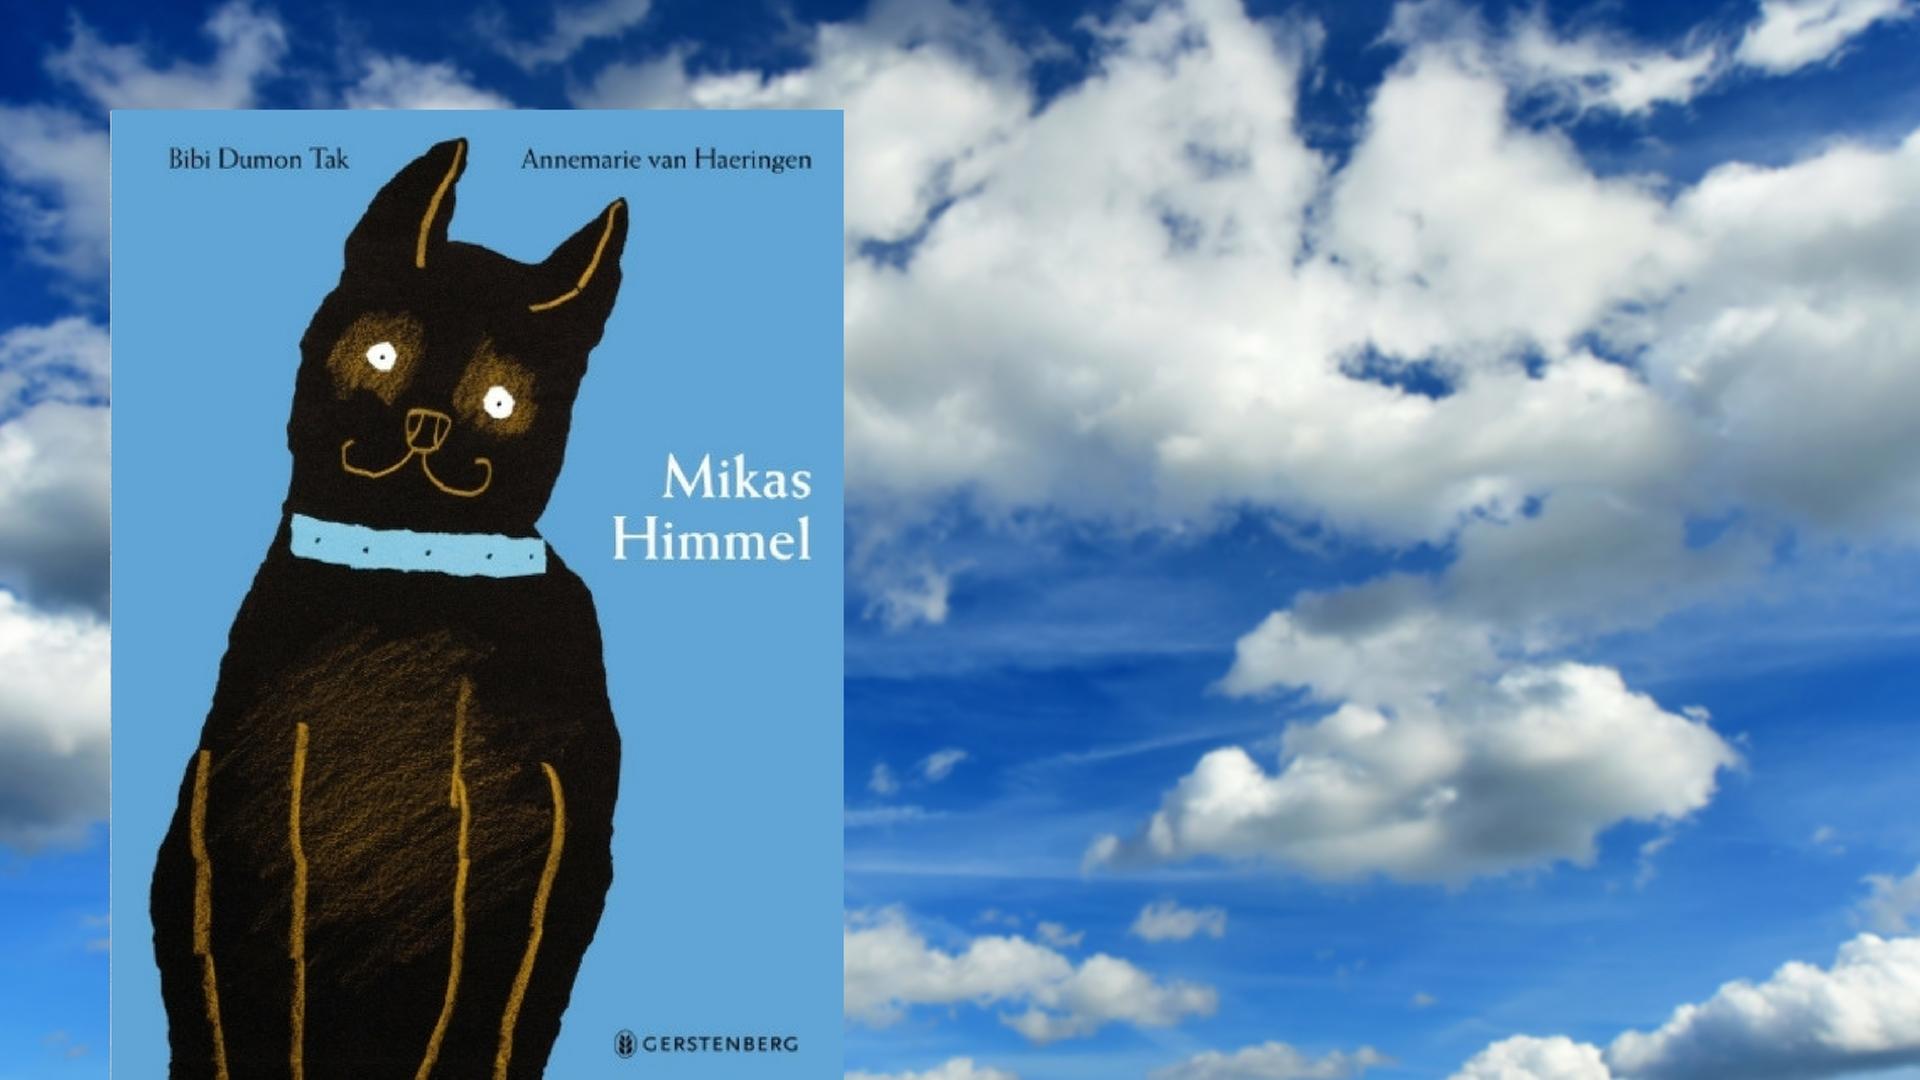 Buchcover: "Bibi Dumon Tak / Annemarie Van Haeringen: Mikas Himmel" und Nachthimmel